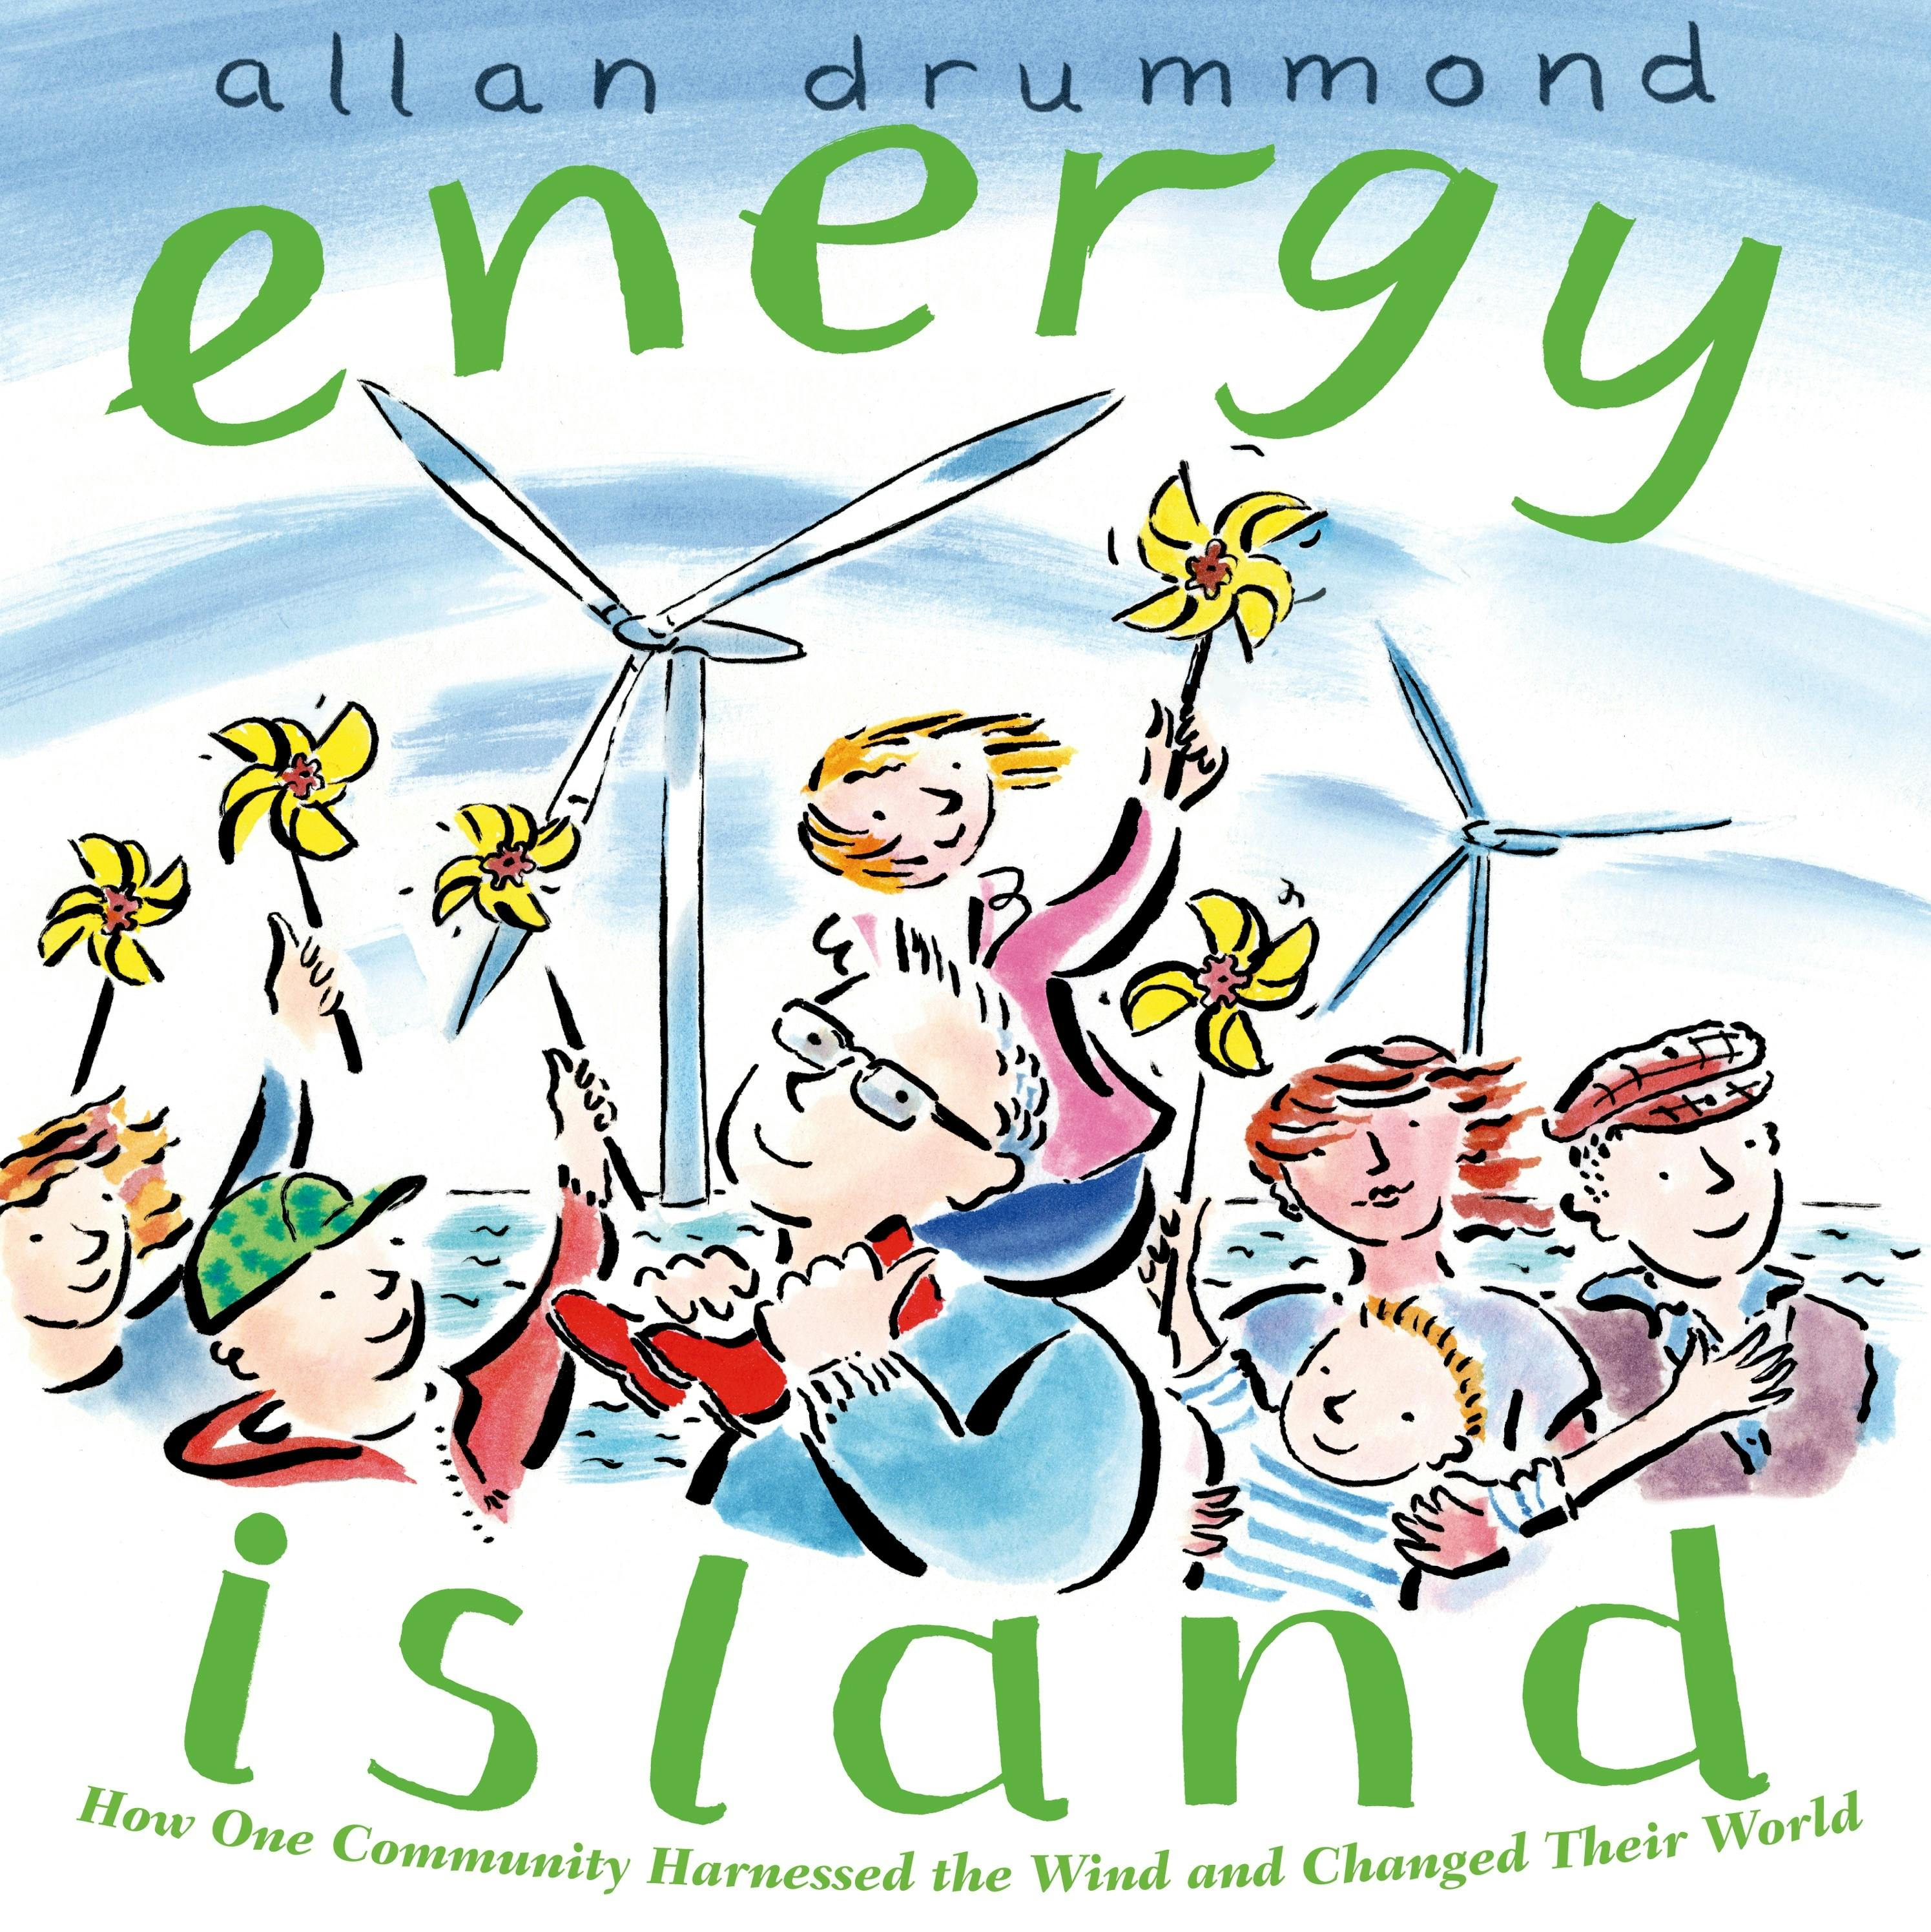 Energy Island